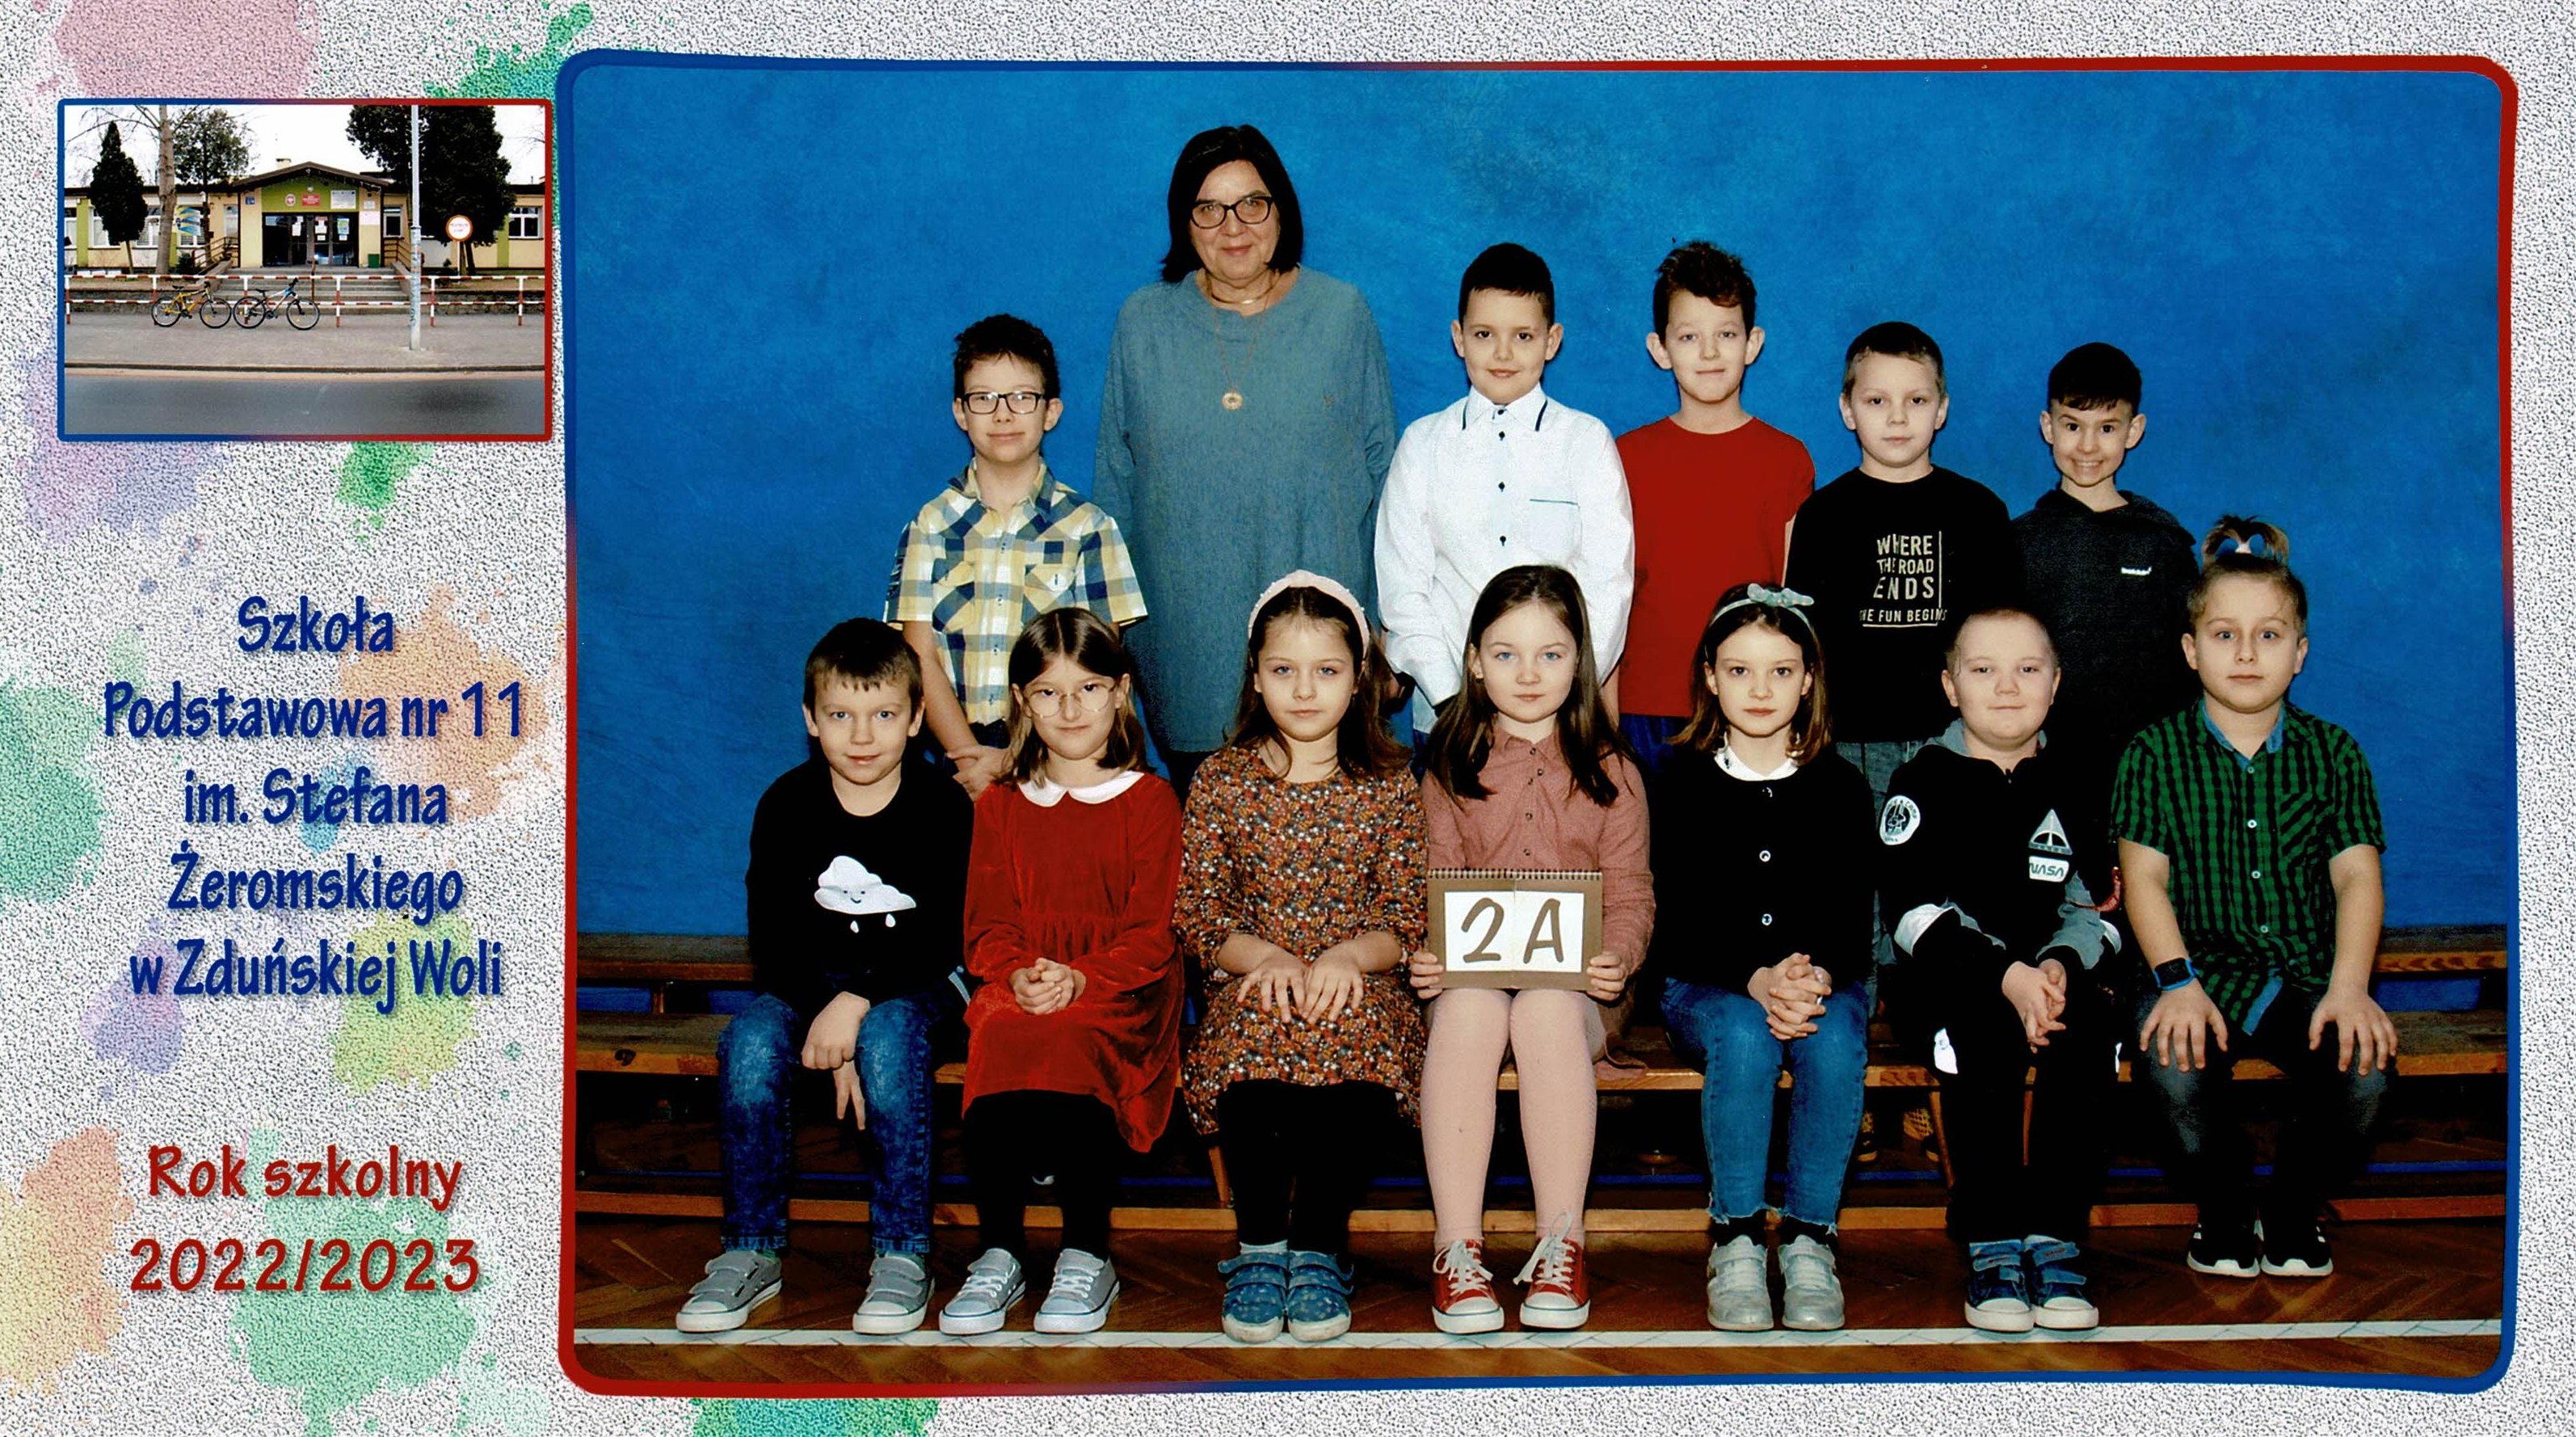 Uczniowie klasy 2A, dziewczynki i chłopcy siedzący na ławce z tabliczką "klasa 2a"